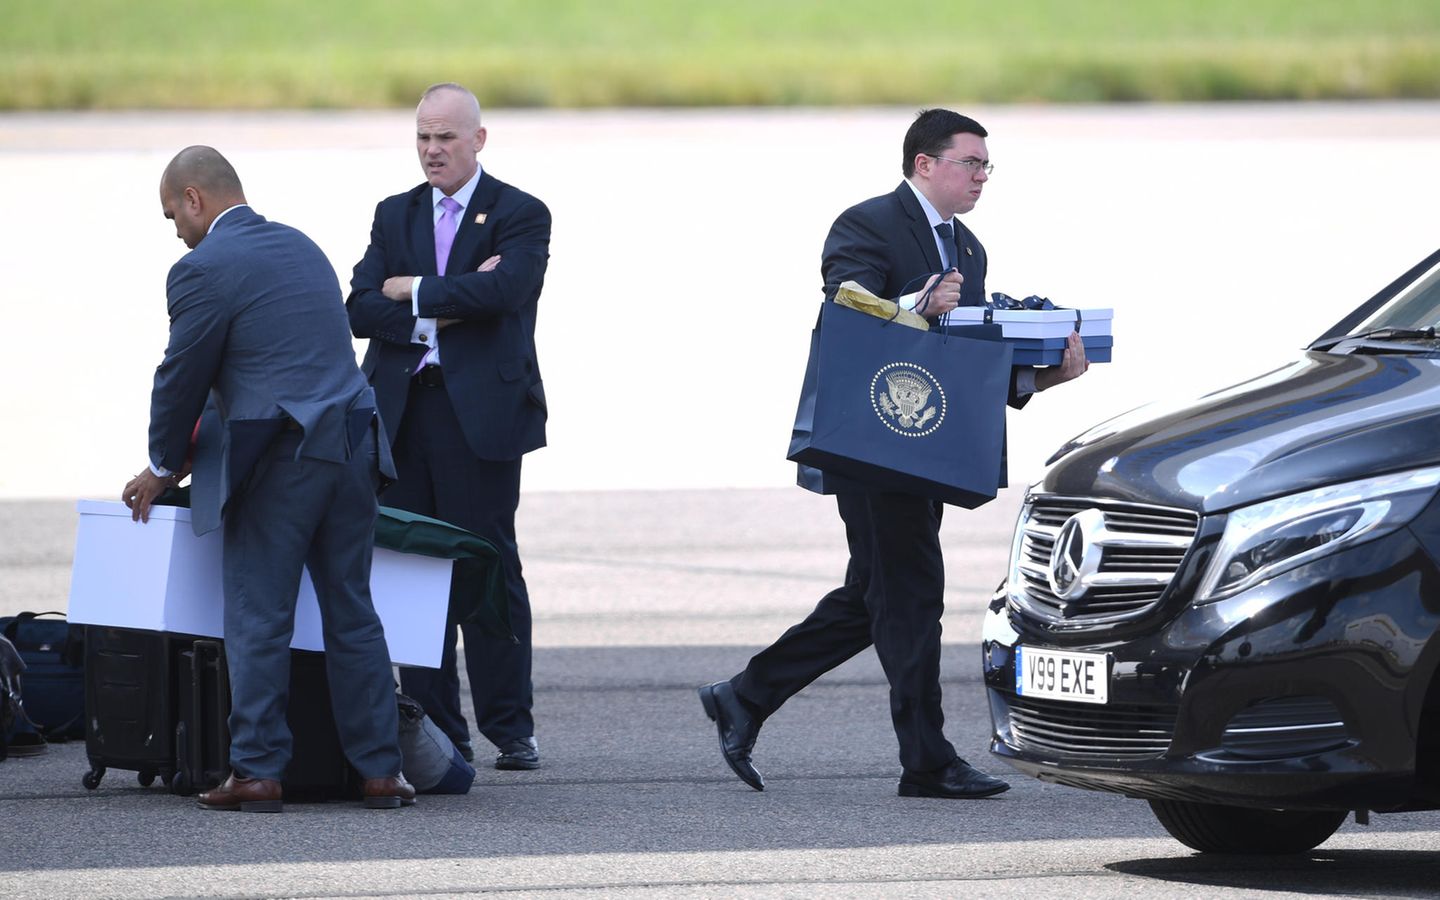 Mitarbeiter laden Sachen aus der Air Force One nach der Landung von Donald Trump in London